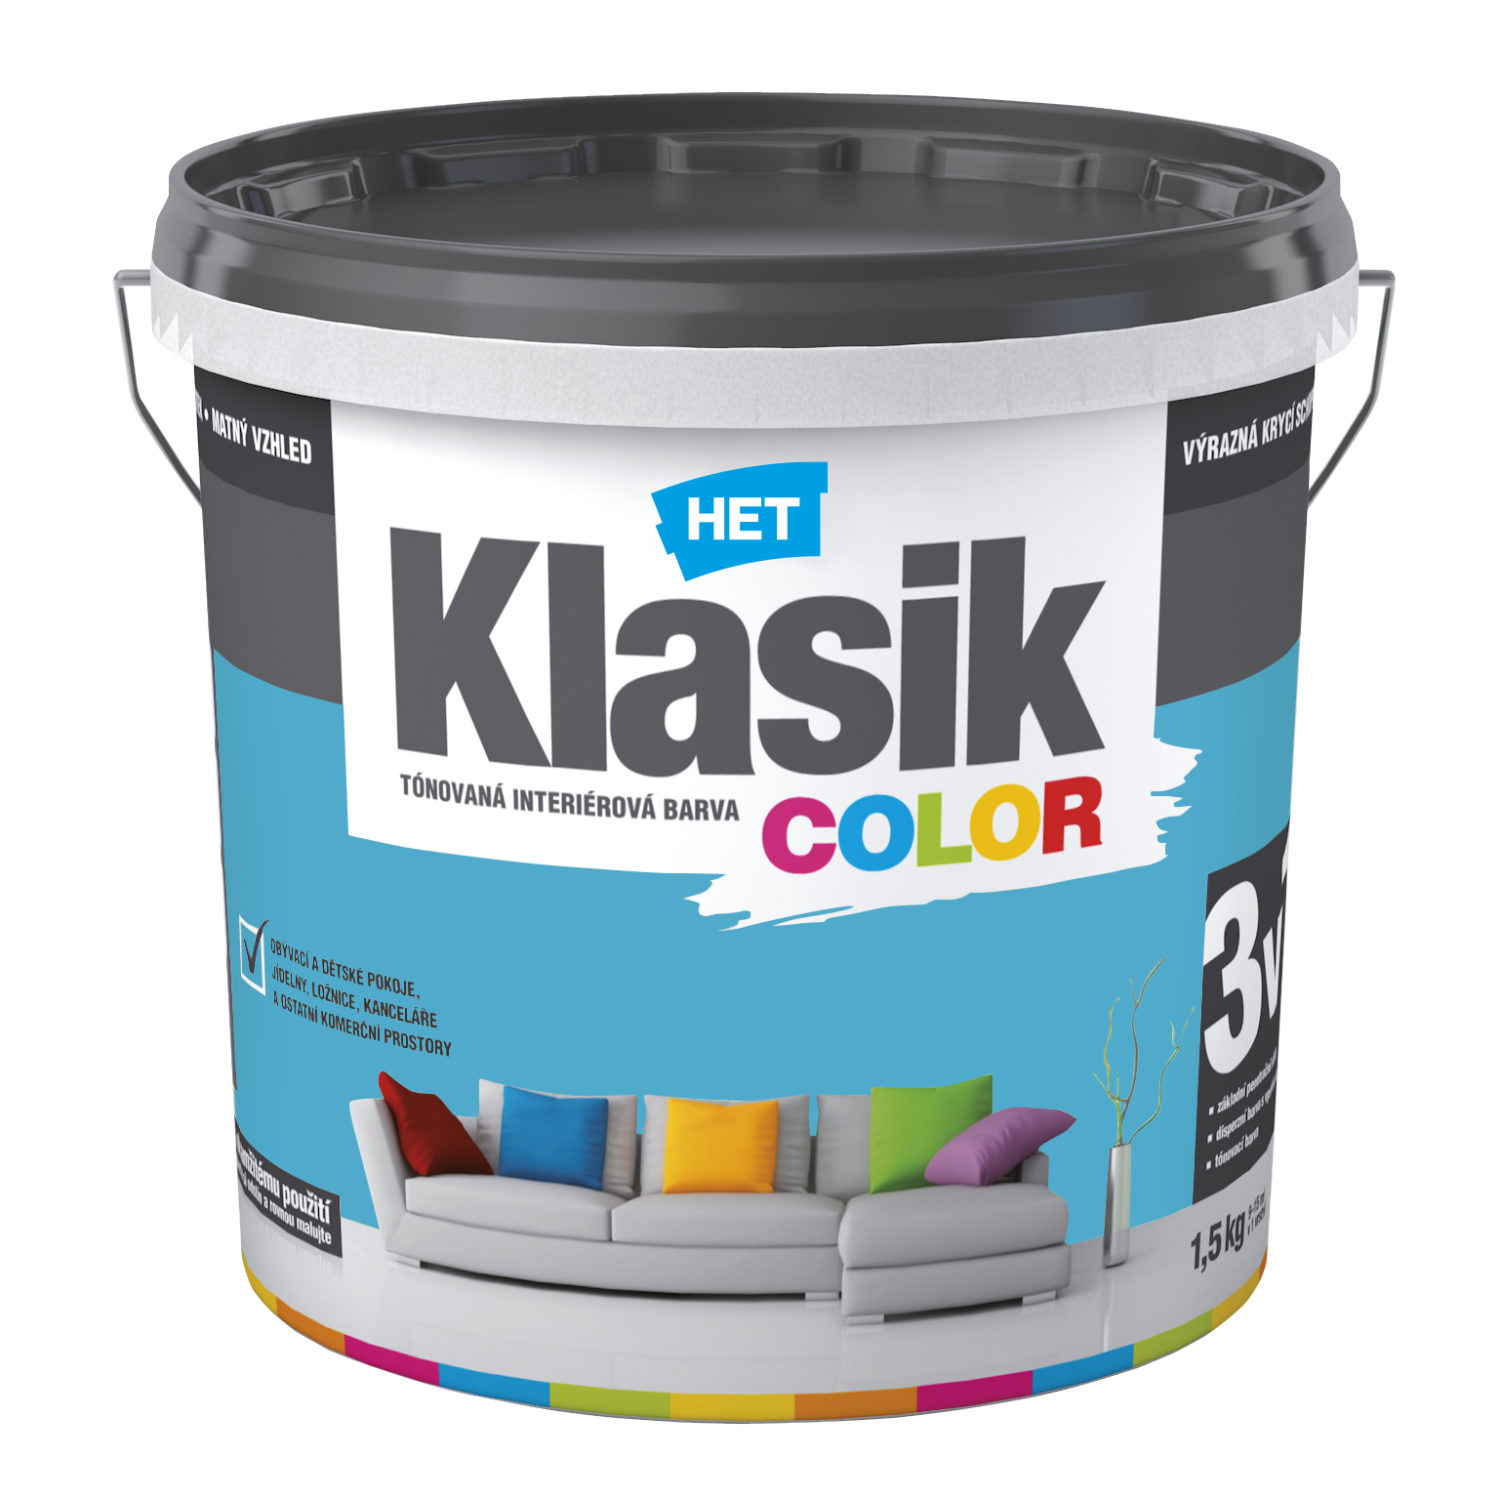 HET Klasik COLOR tónovaná interiérová akrylátová disperzná oteruvzdorná farba 1,5 kg, KC0487 - modrý tyrkysový